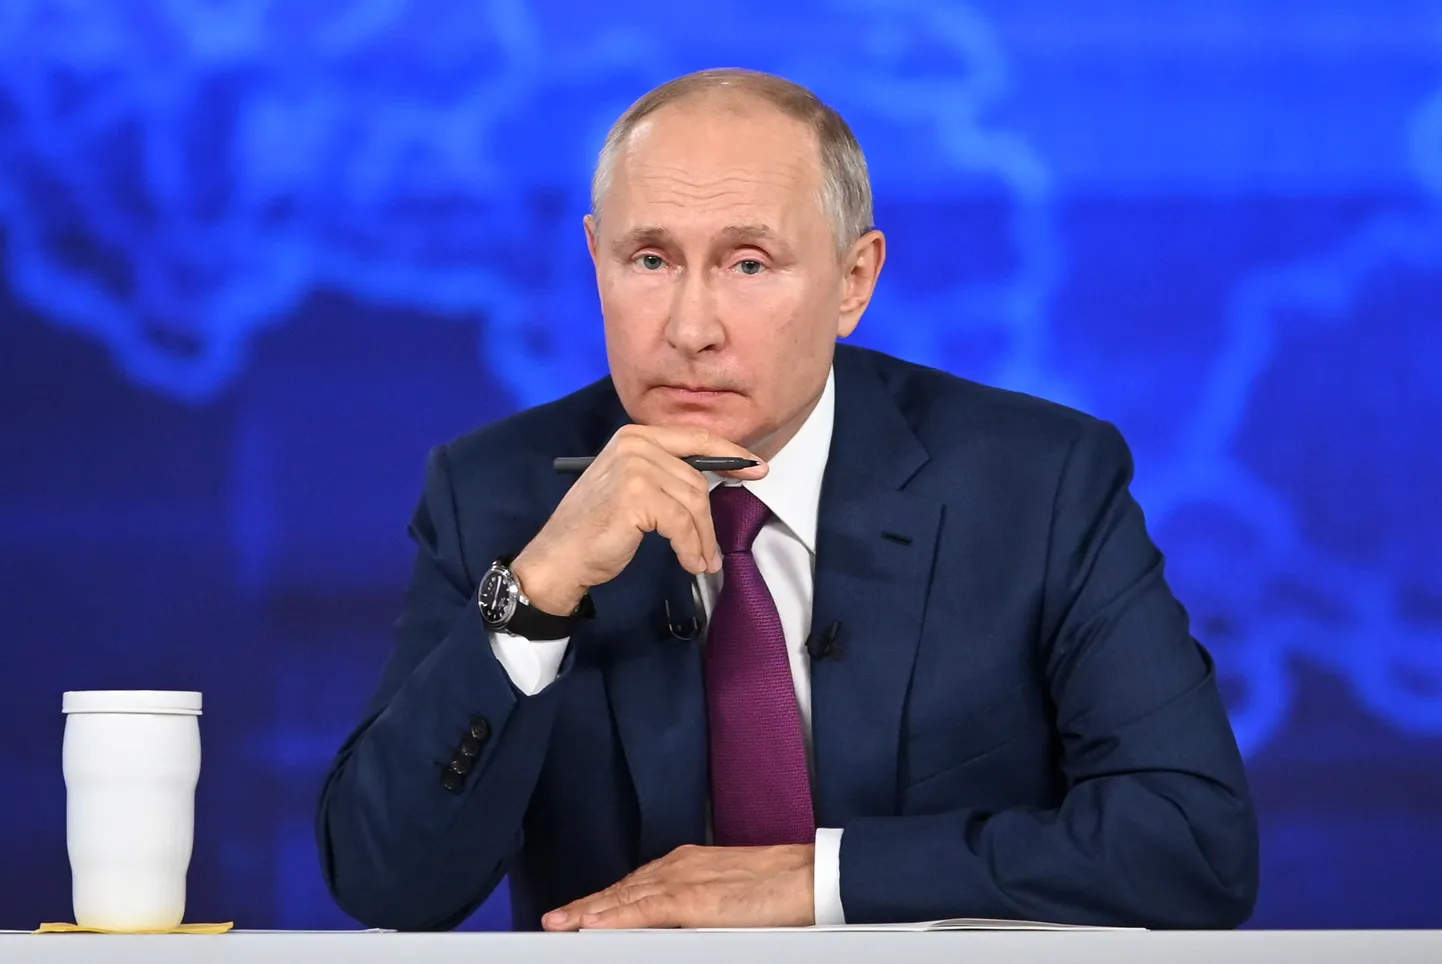 Krievijas prezidents Vladimirs Putins sava tēla spodrināšanas pārraidē "Tiešā līnija"